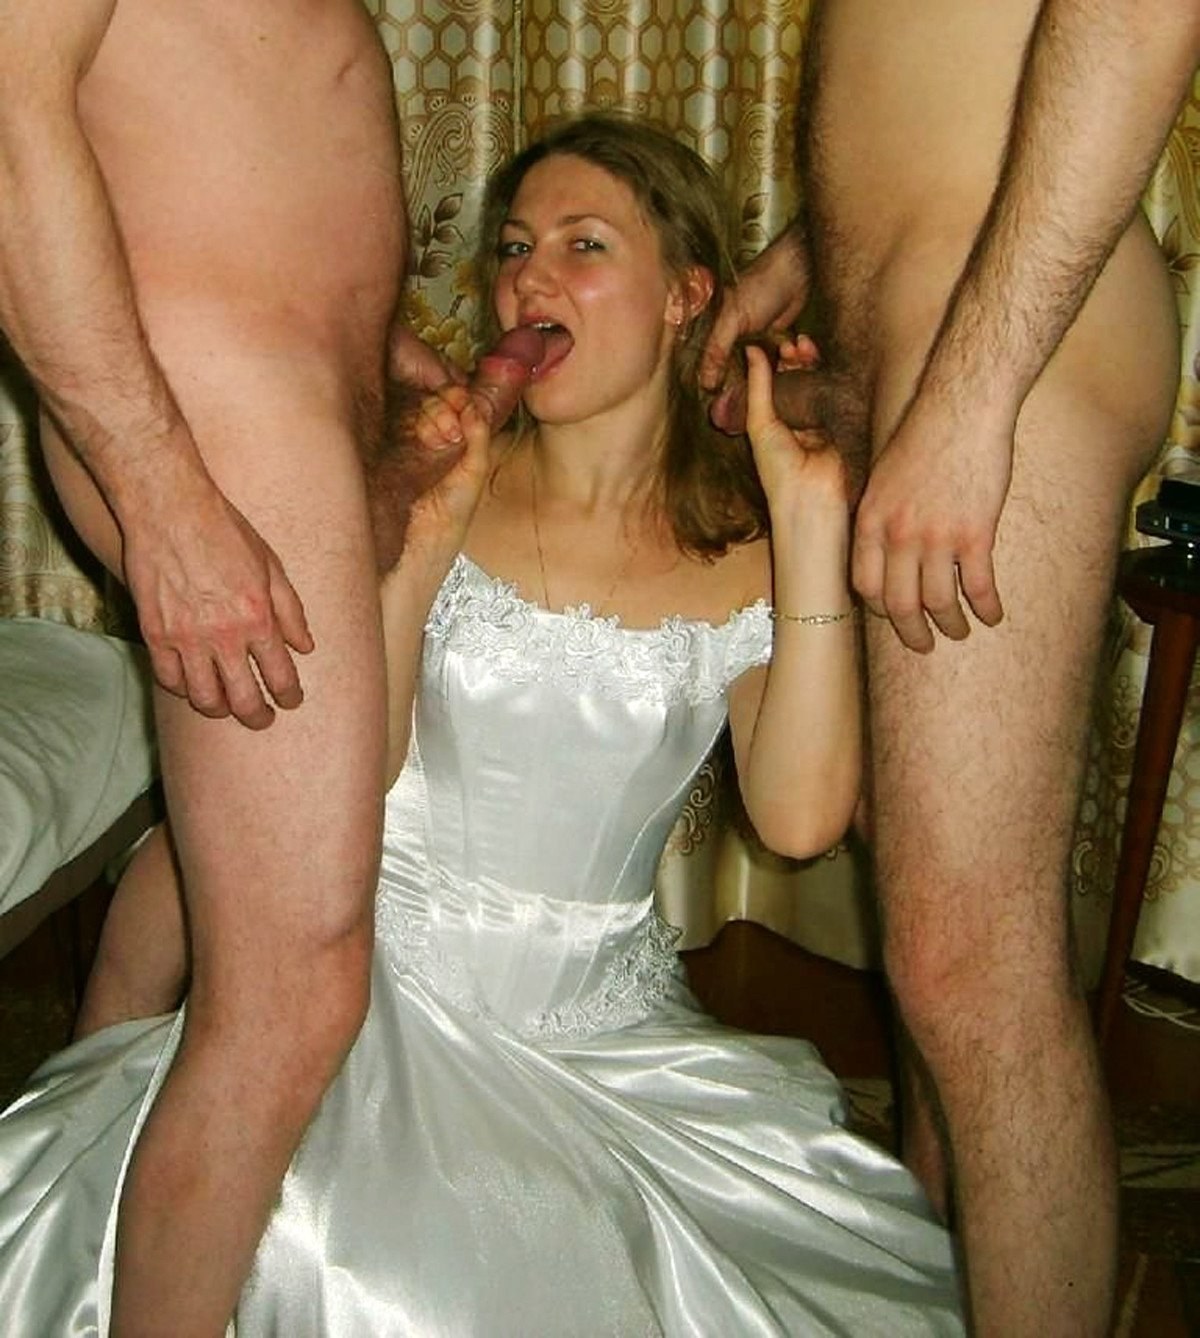 Пизда обнаженной супруги в свадебном наряде (15 фото эротики)